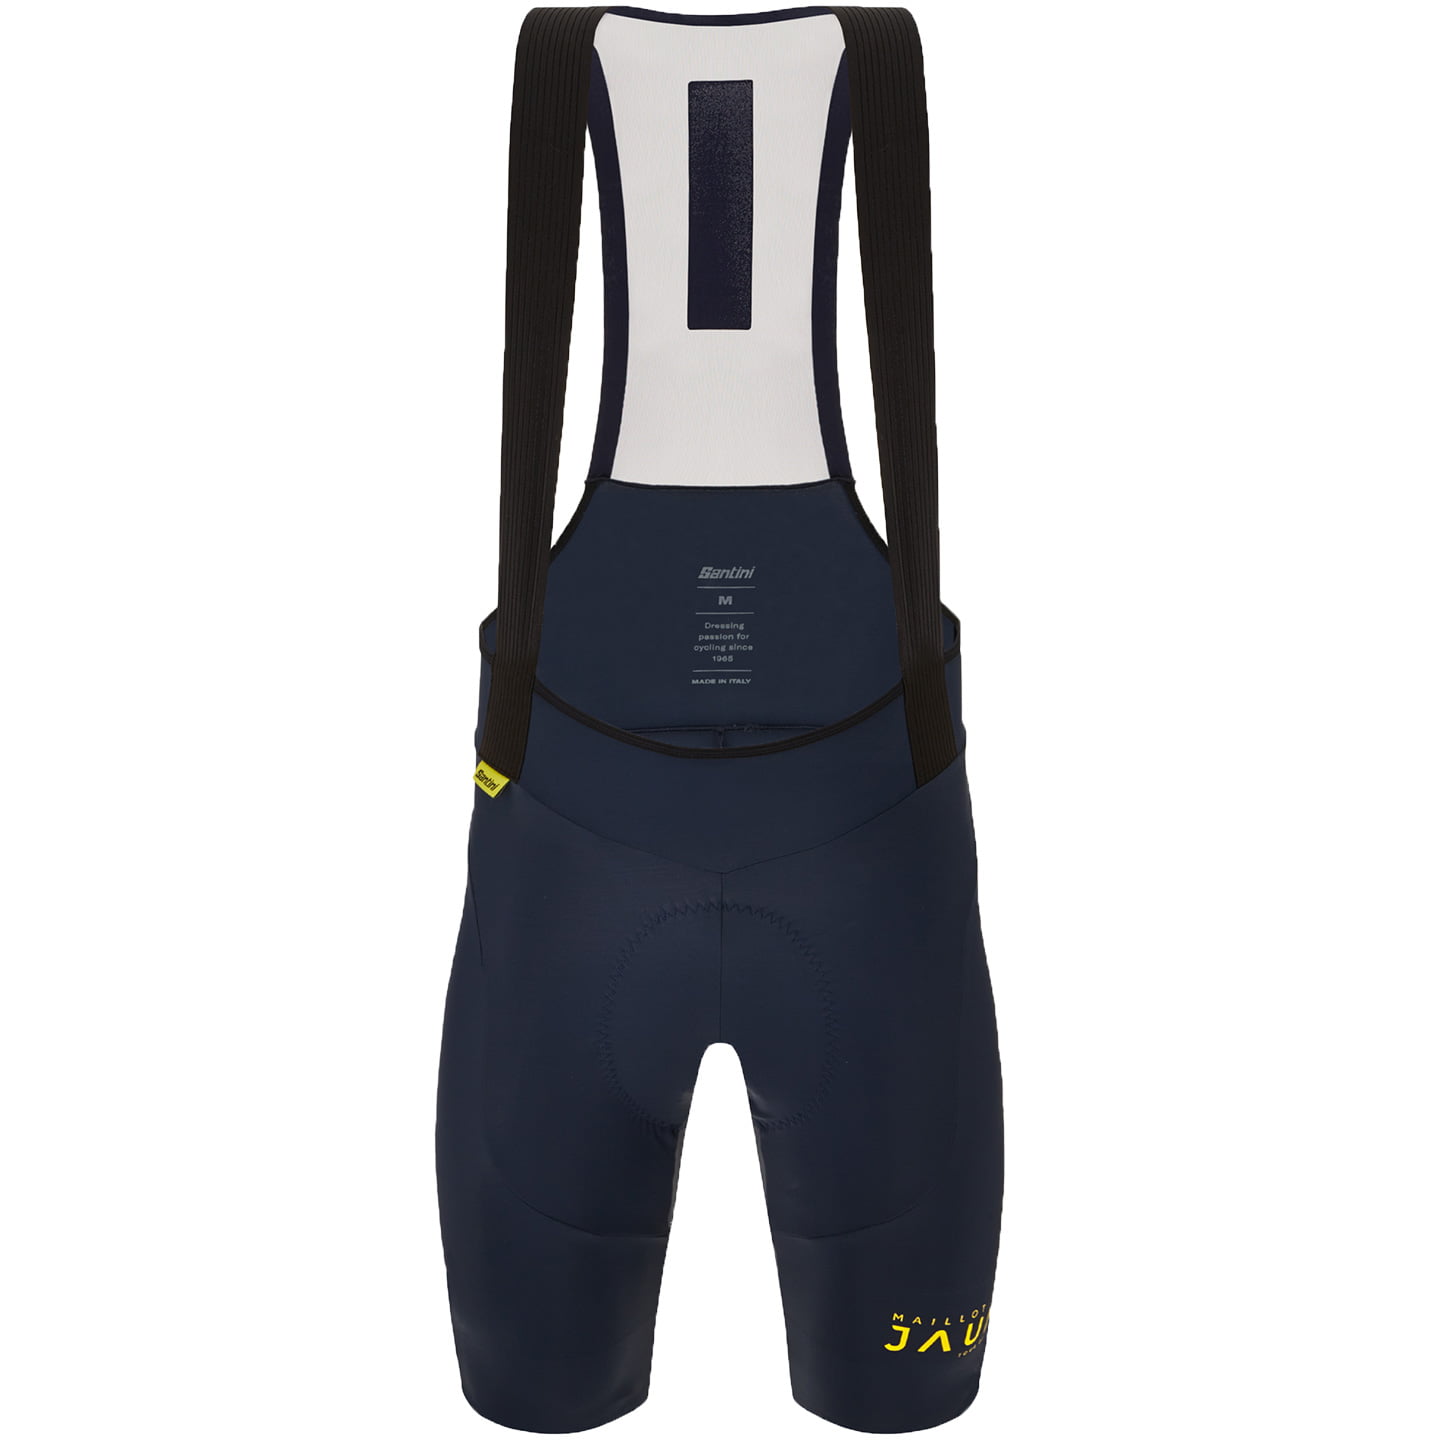 TOUR DE FRANCE Bib Shorts Le Maillot Jaune Allez 2024, for men, size M, Cycle shorts, Cycling clothing